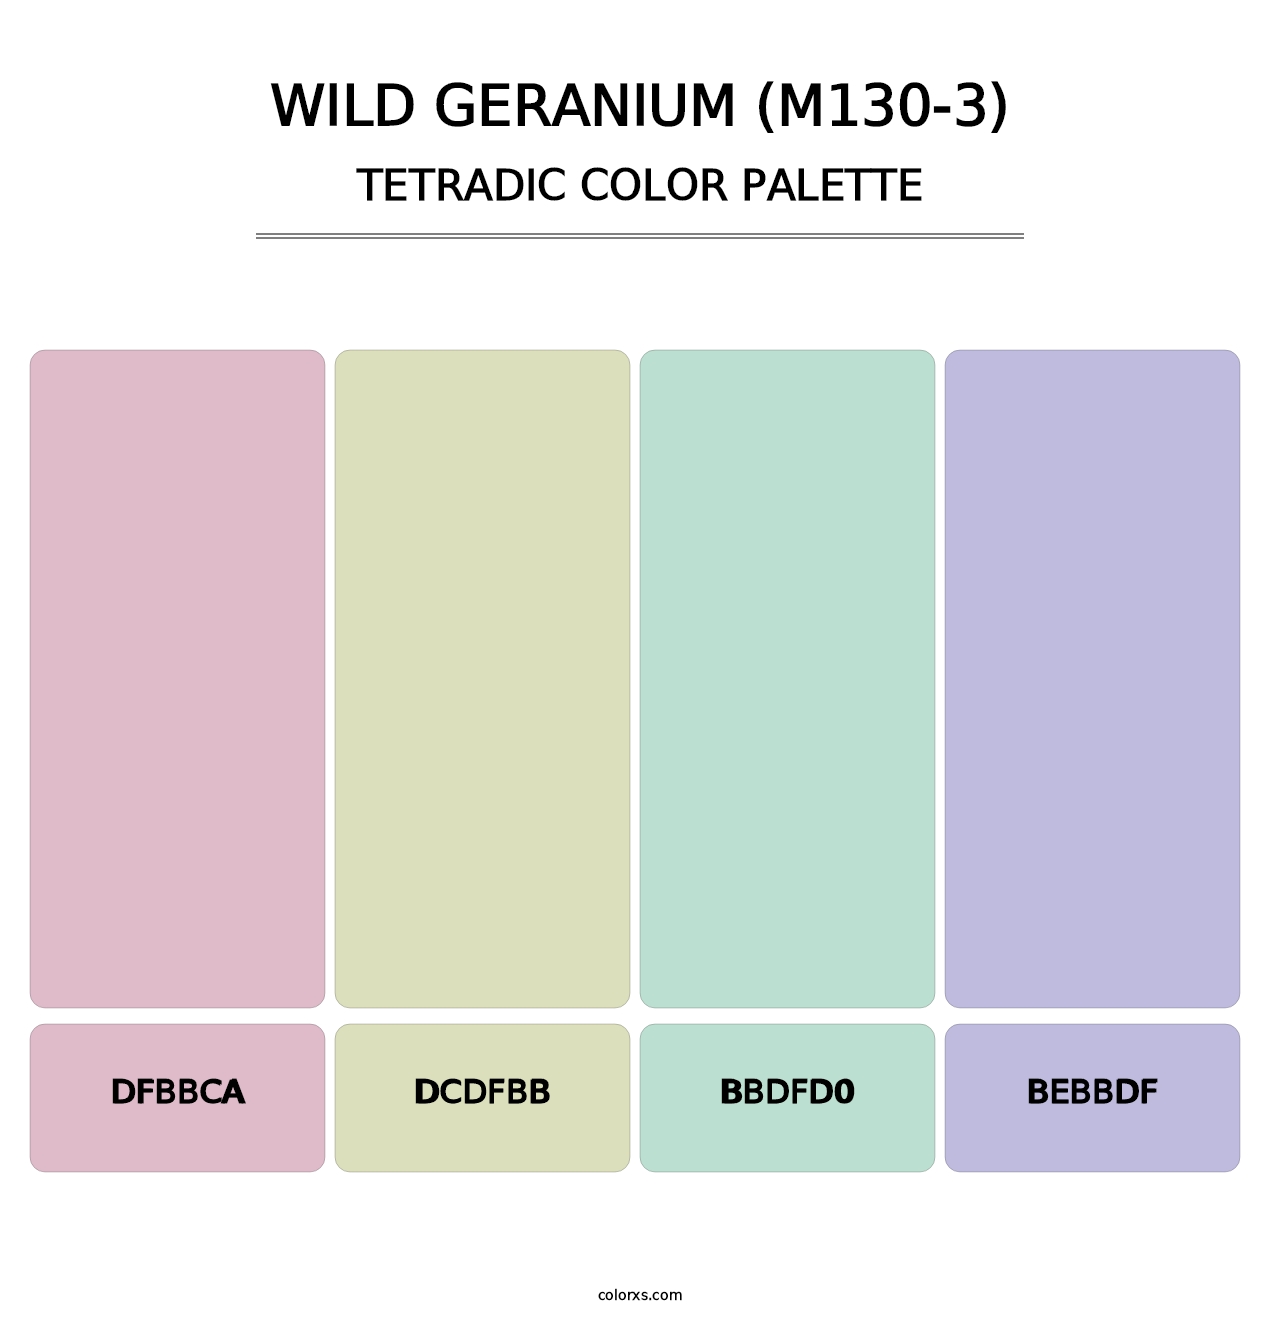 Wild Geranium (M130-3) - Tetradic Color Palette